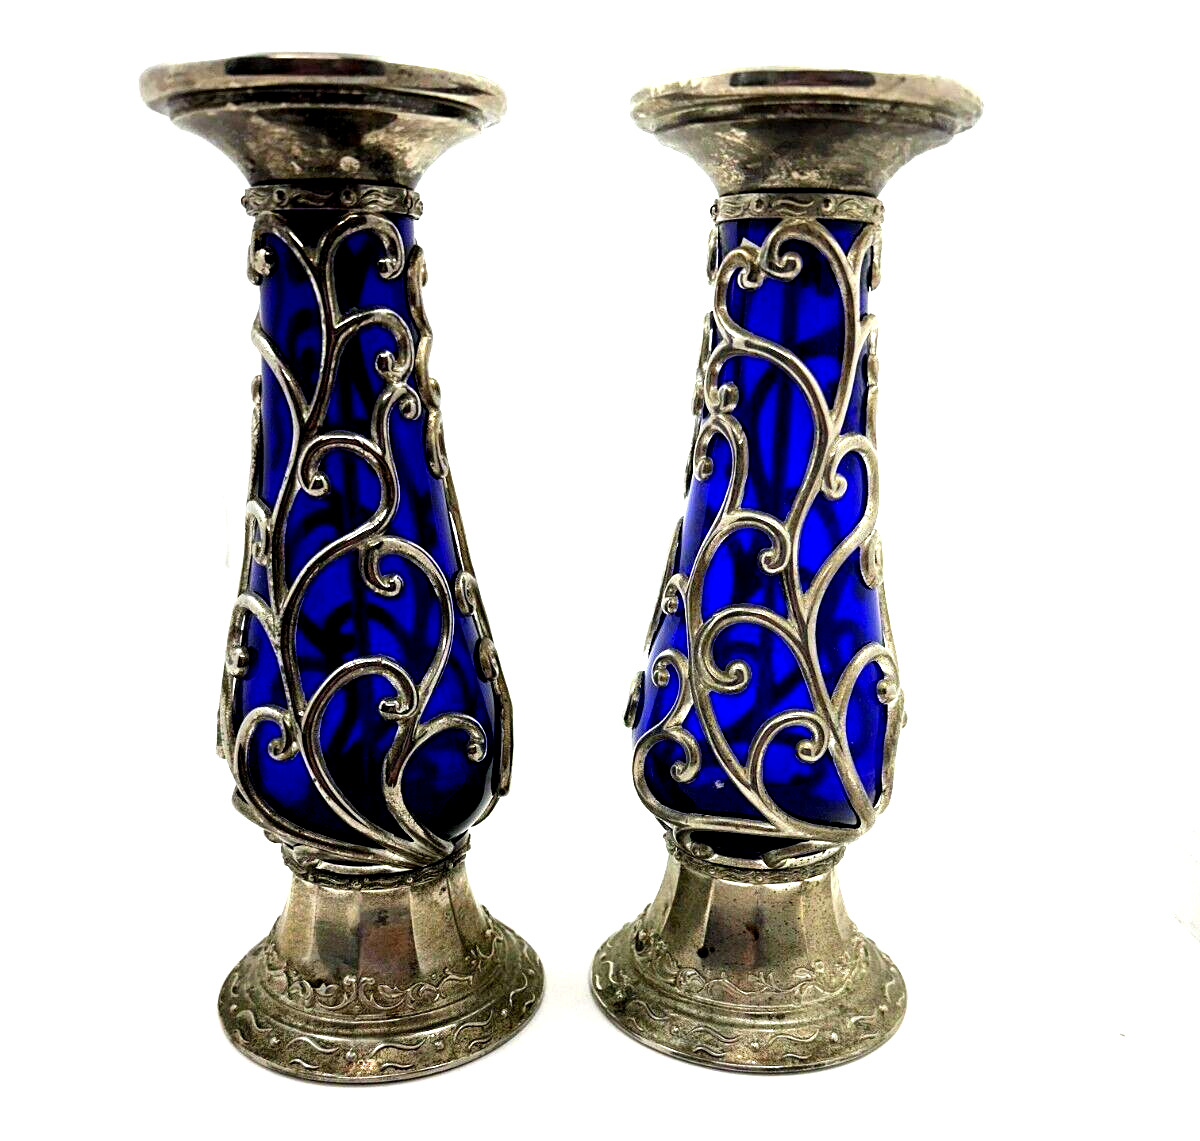 Vintage Cobalt Blue Glass & Silver Pillar Candle holders Set Ornament set of 2